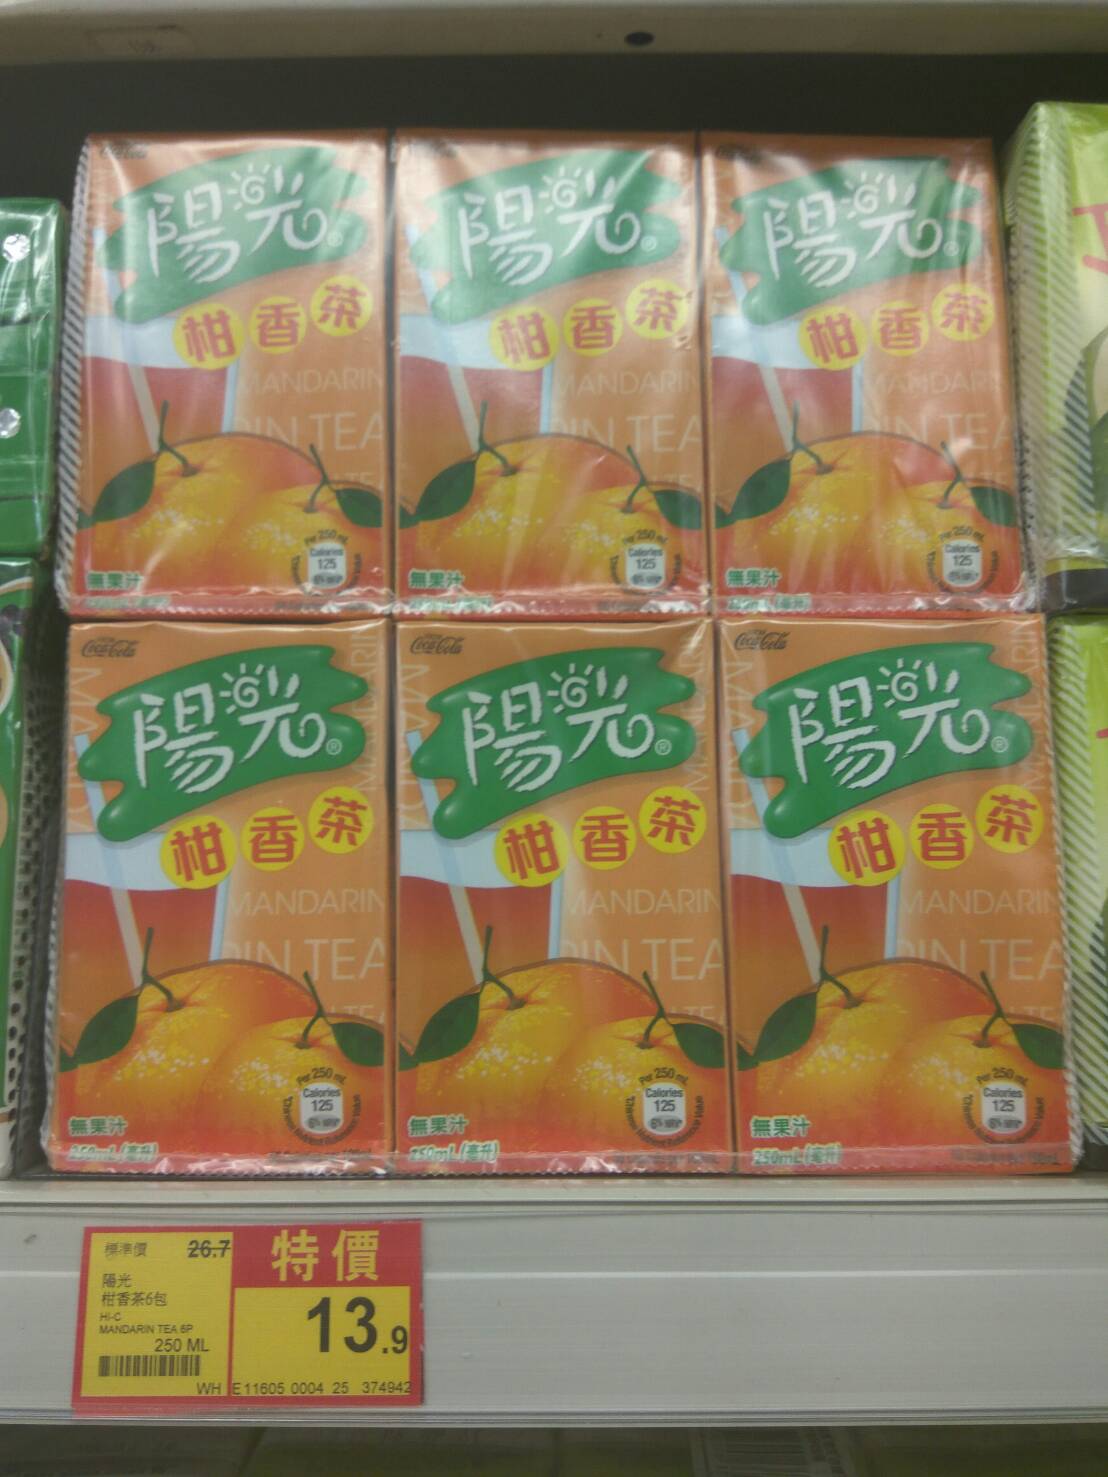 hi-c-mandarin-tea-hk